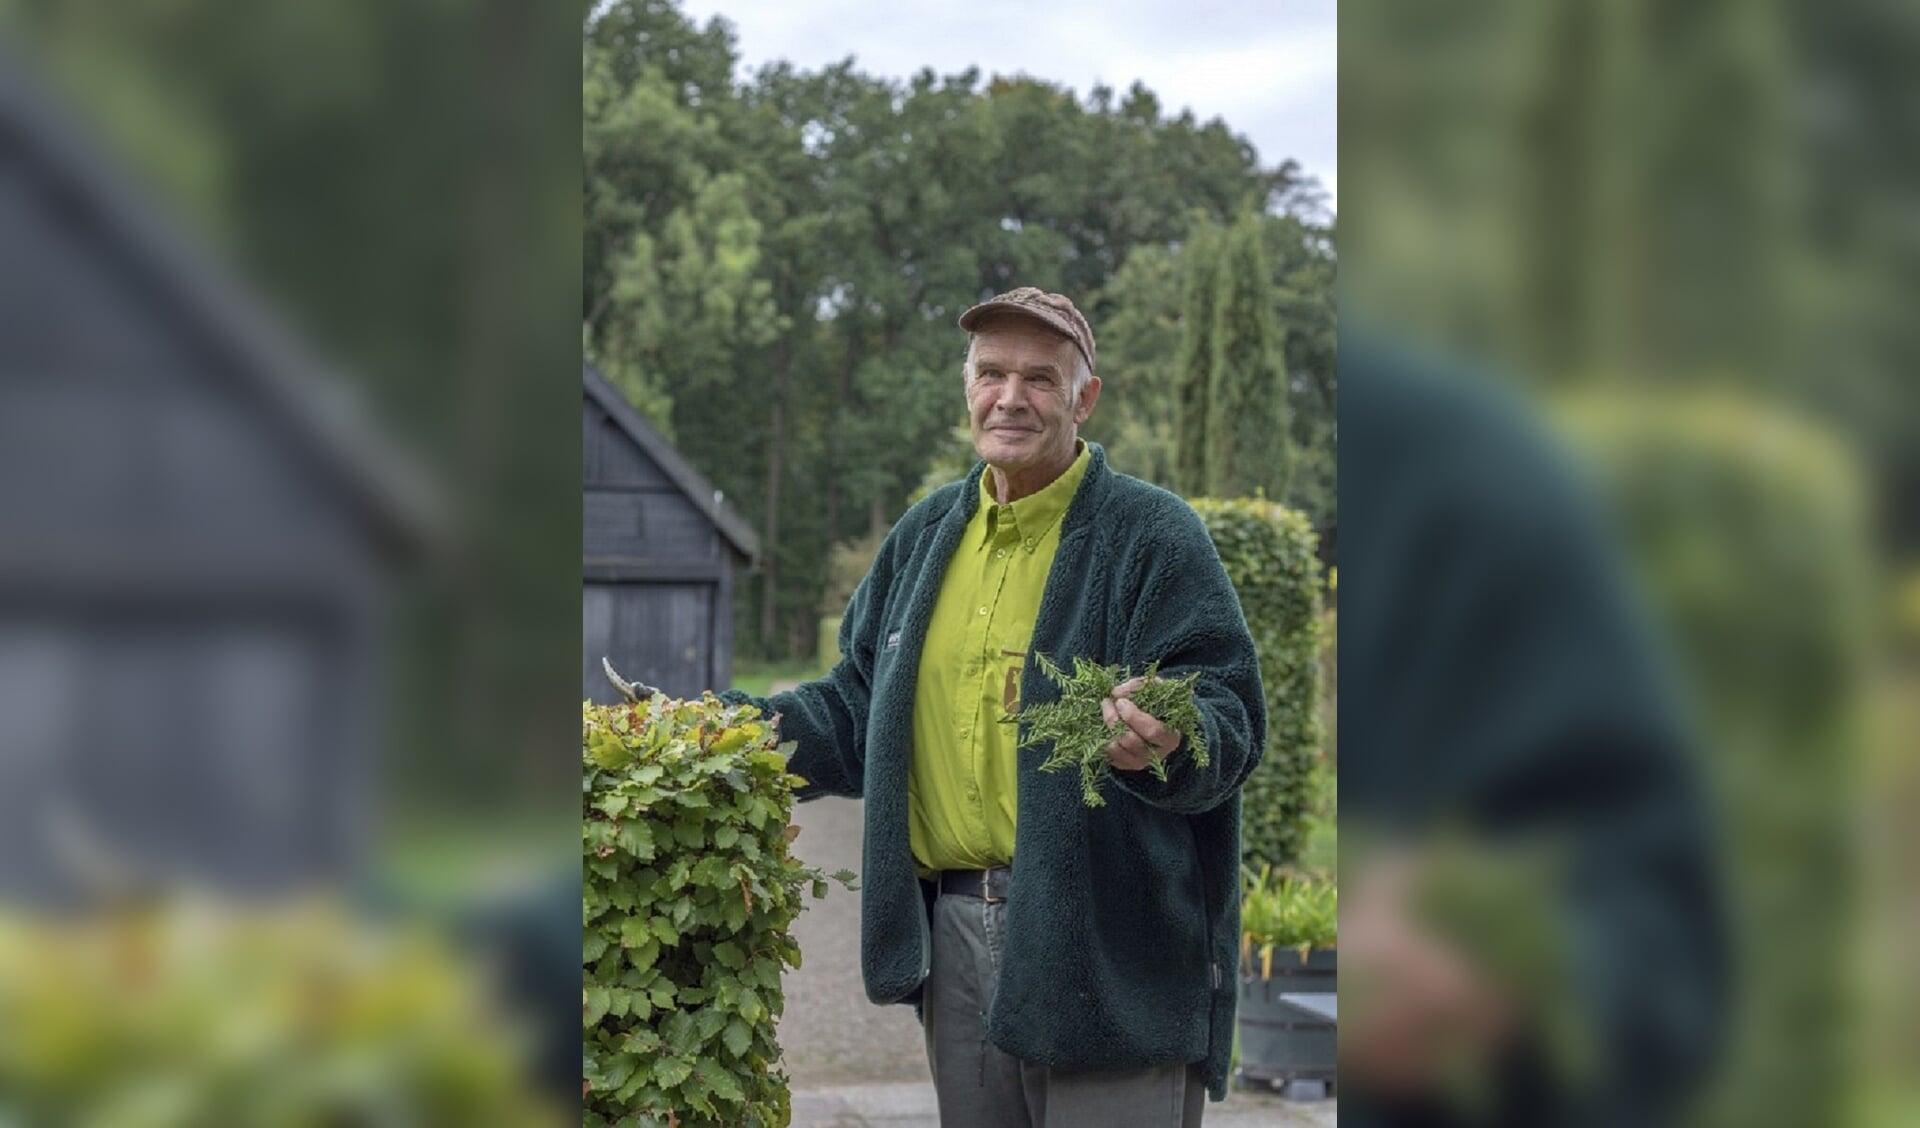 Na 50 dienstjaren wordt Ben vrijwilliger op landgoed Oostbroek.